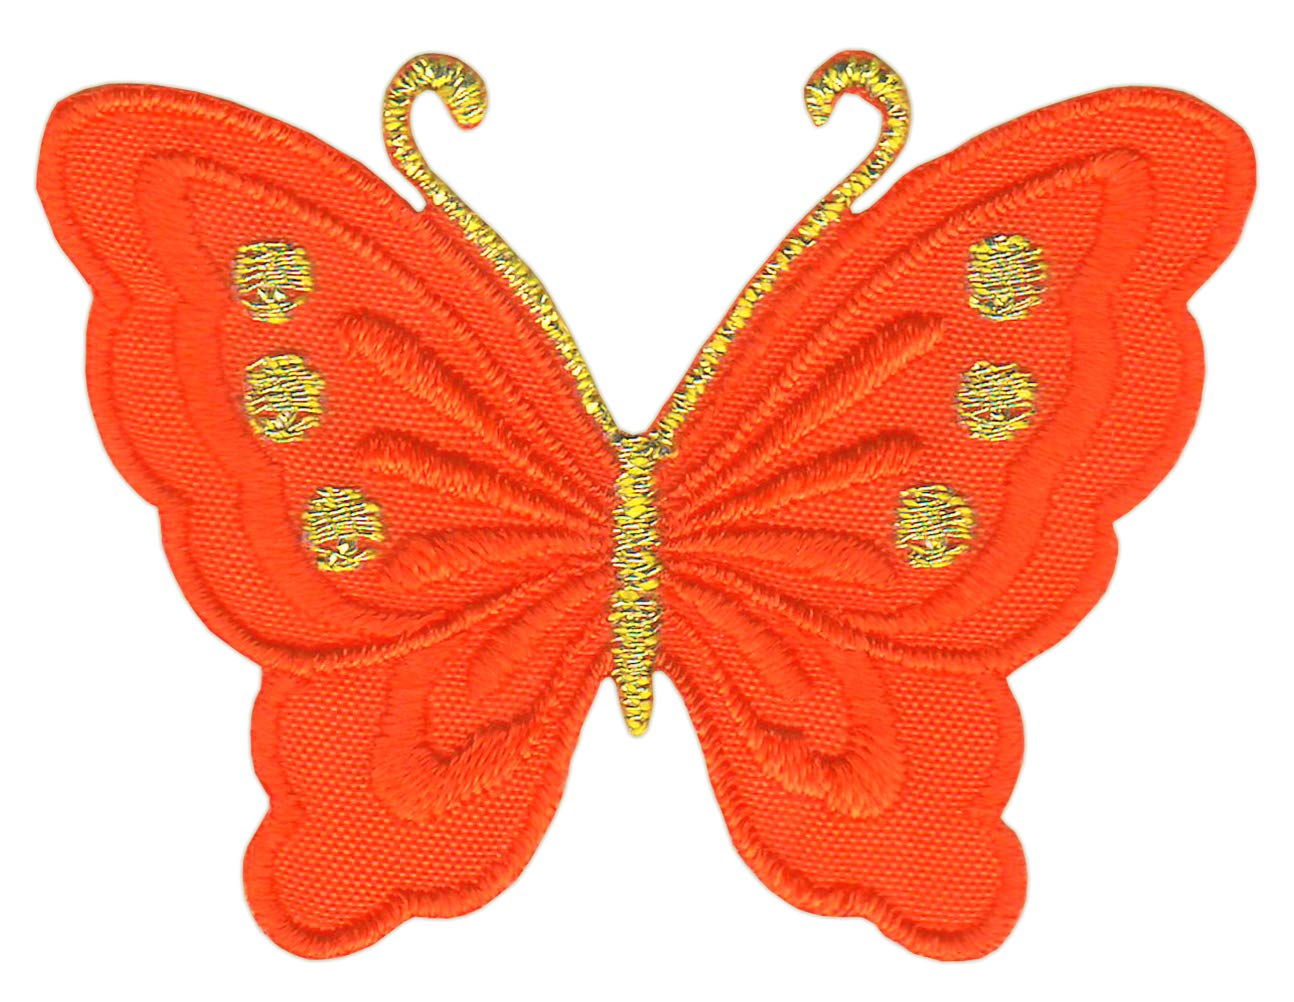 Schmetterling klein Orangerot Orange Aufnäher Bügelbild Patch Größe 5,2 x 3,7 cm von Bestellmich / Aufnäher